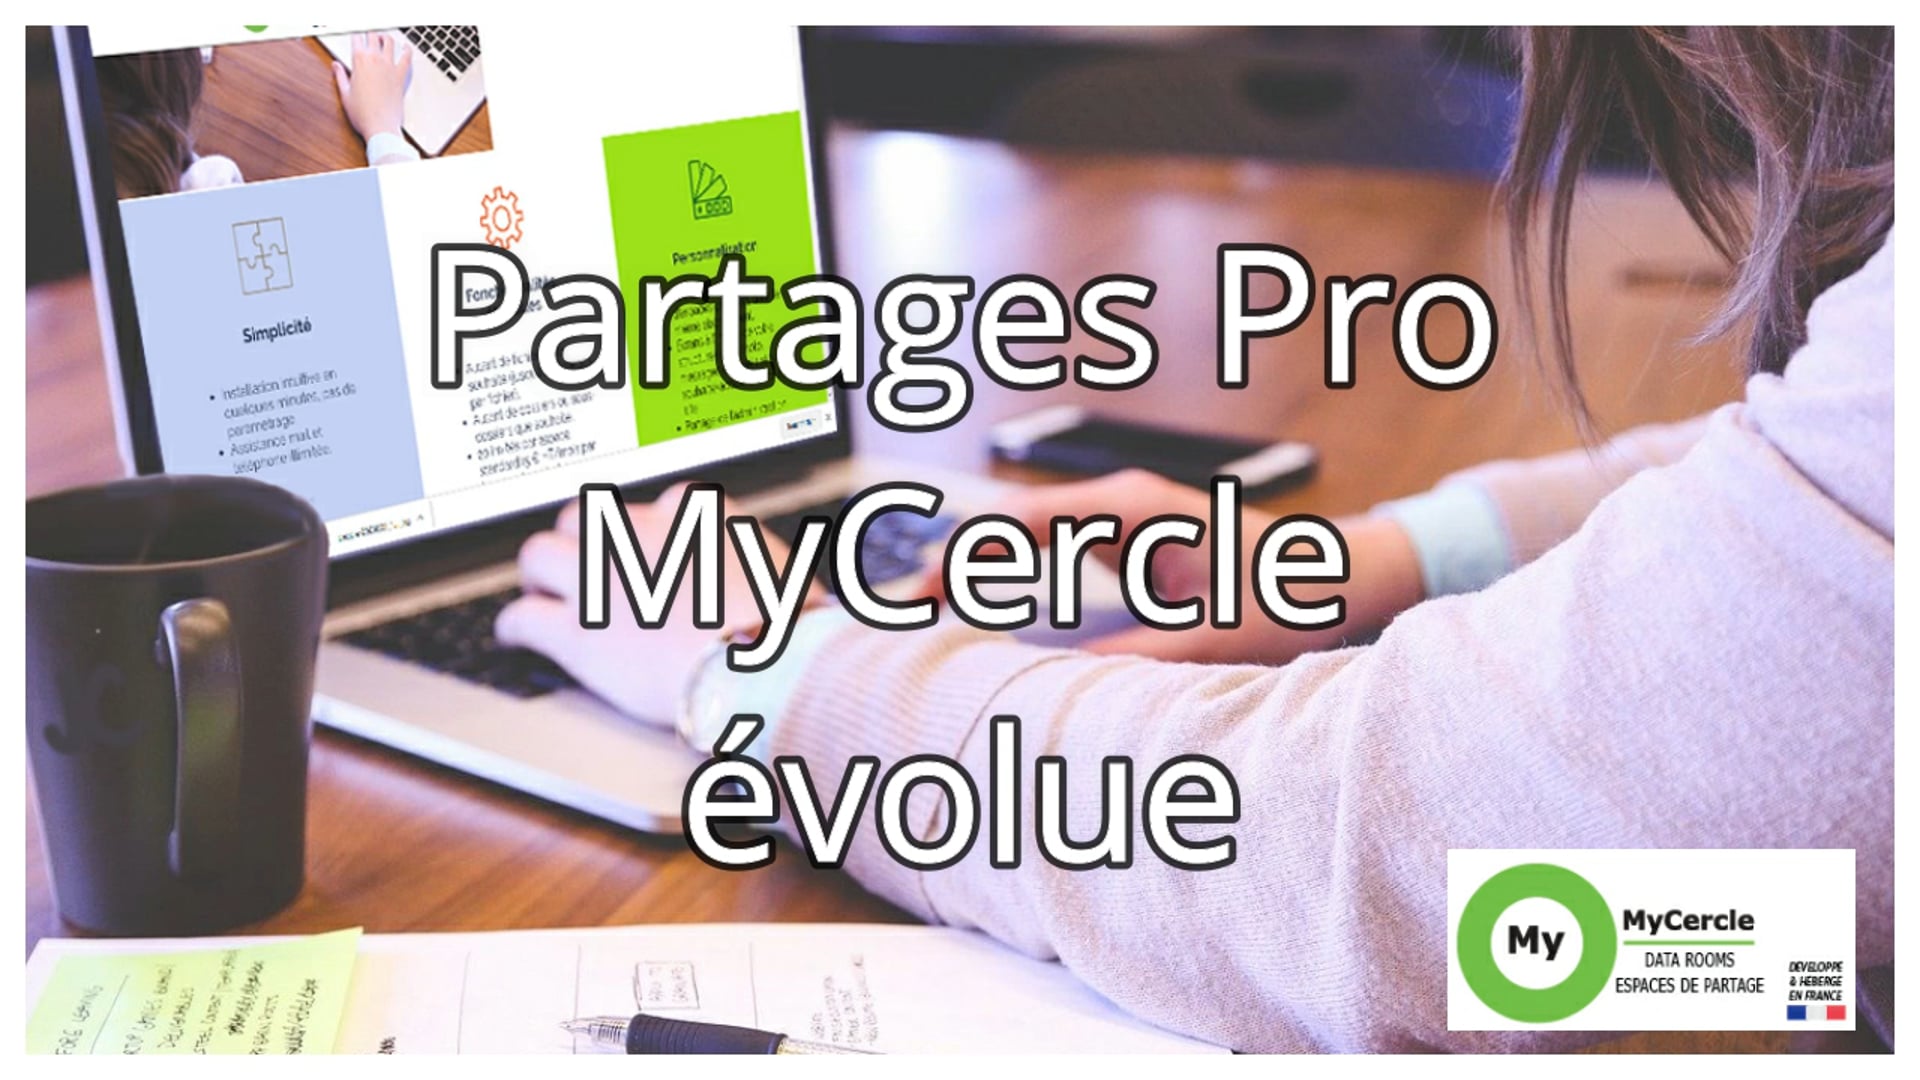 Partages Pro MyCercle